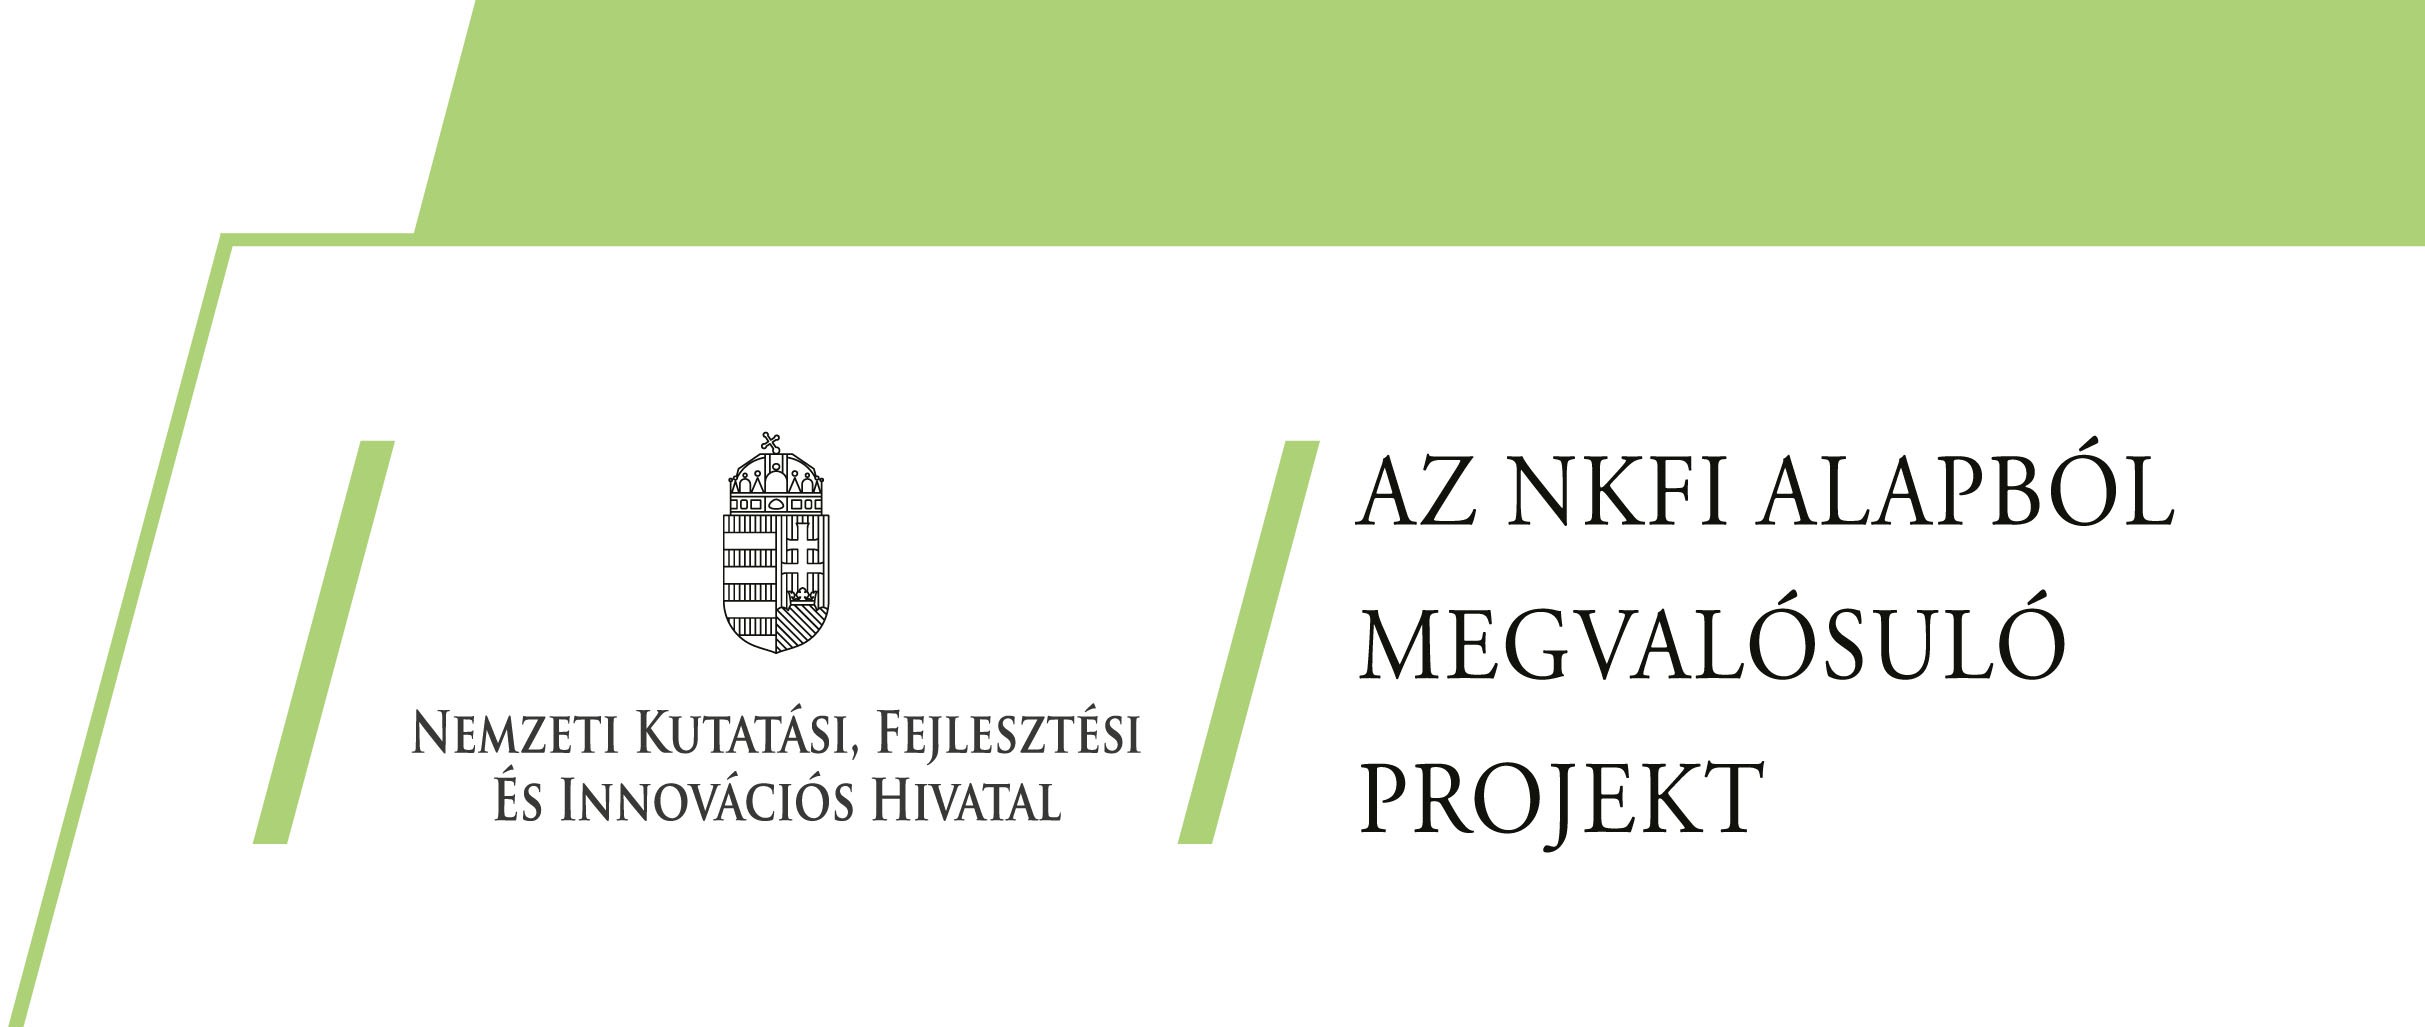 Nemzeti kutatási fejlesztési és innovációs hivatal, Az NKFI alapból megvalósított projekt